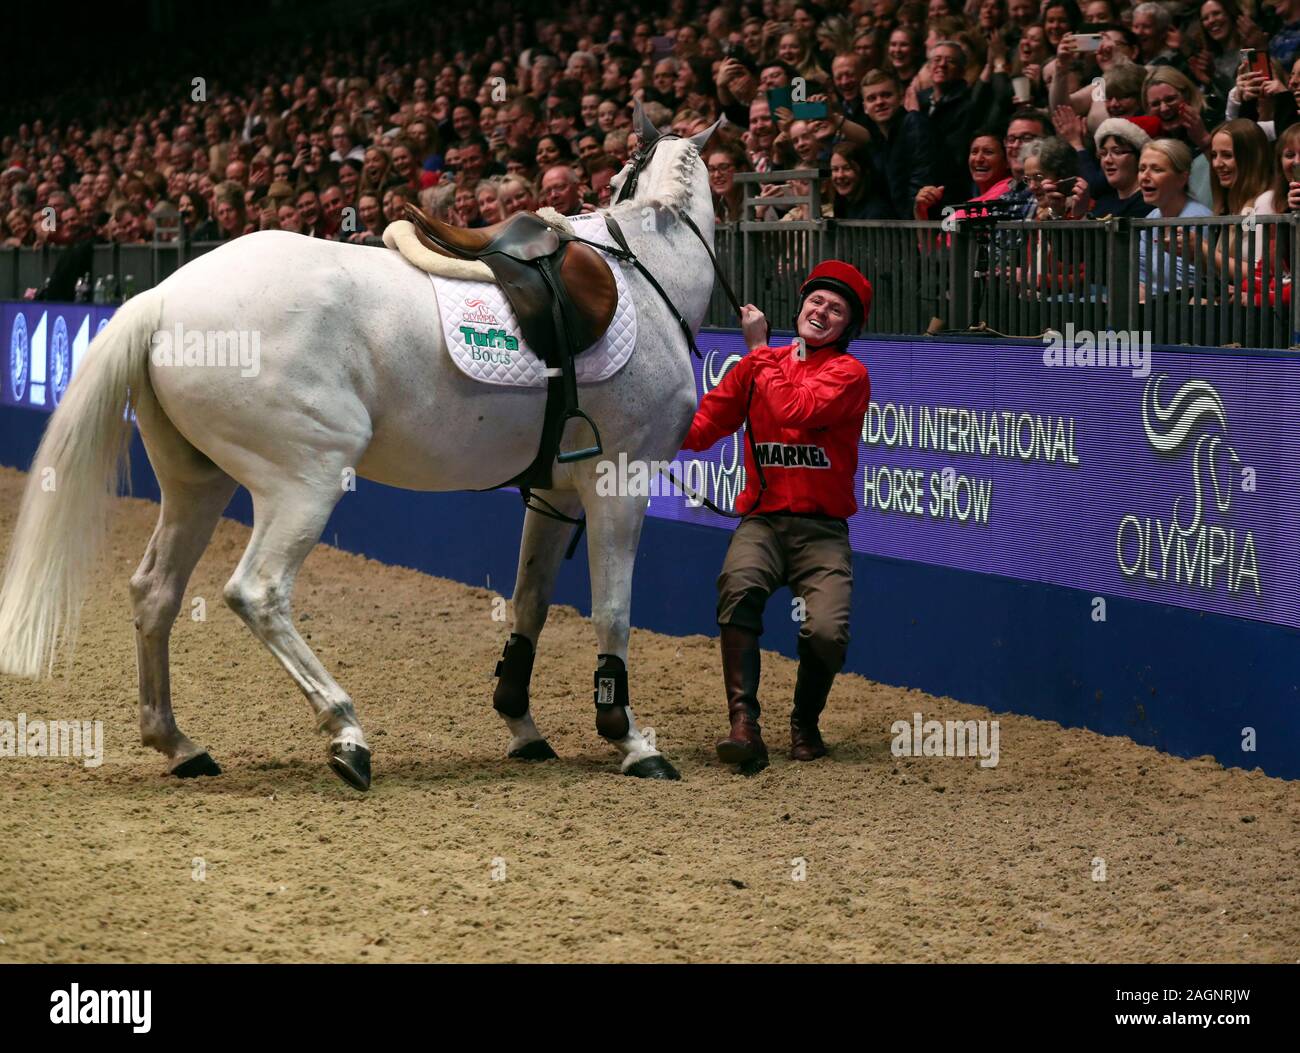 Sir Anthony McCoy tombe bien que concurrentes dans les jockeys Markel, saut à l'aide du Fonds au cours de la classe des jockeys blessés jour cinq de la London International Horse Show à l'Olympia de Londres. Banque D'Images